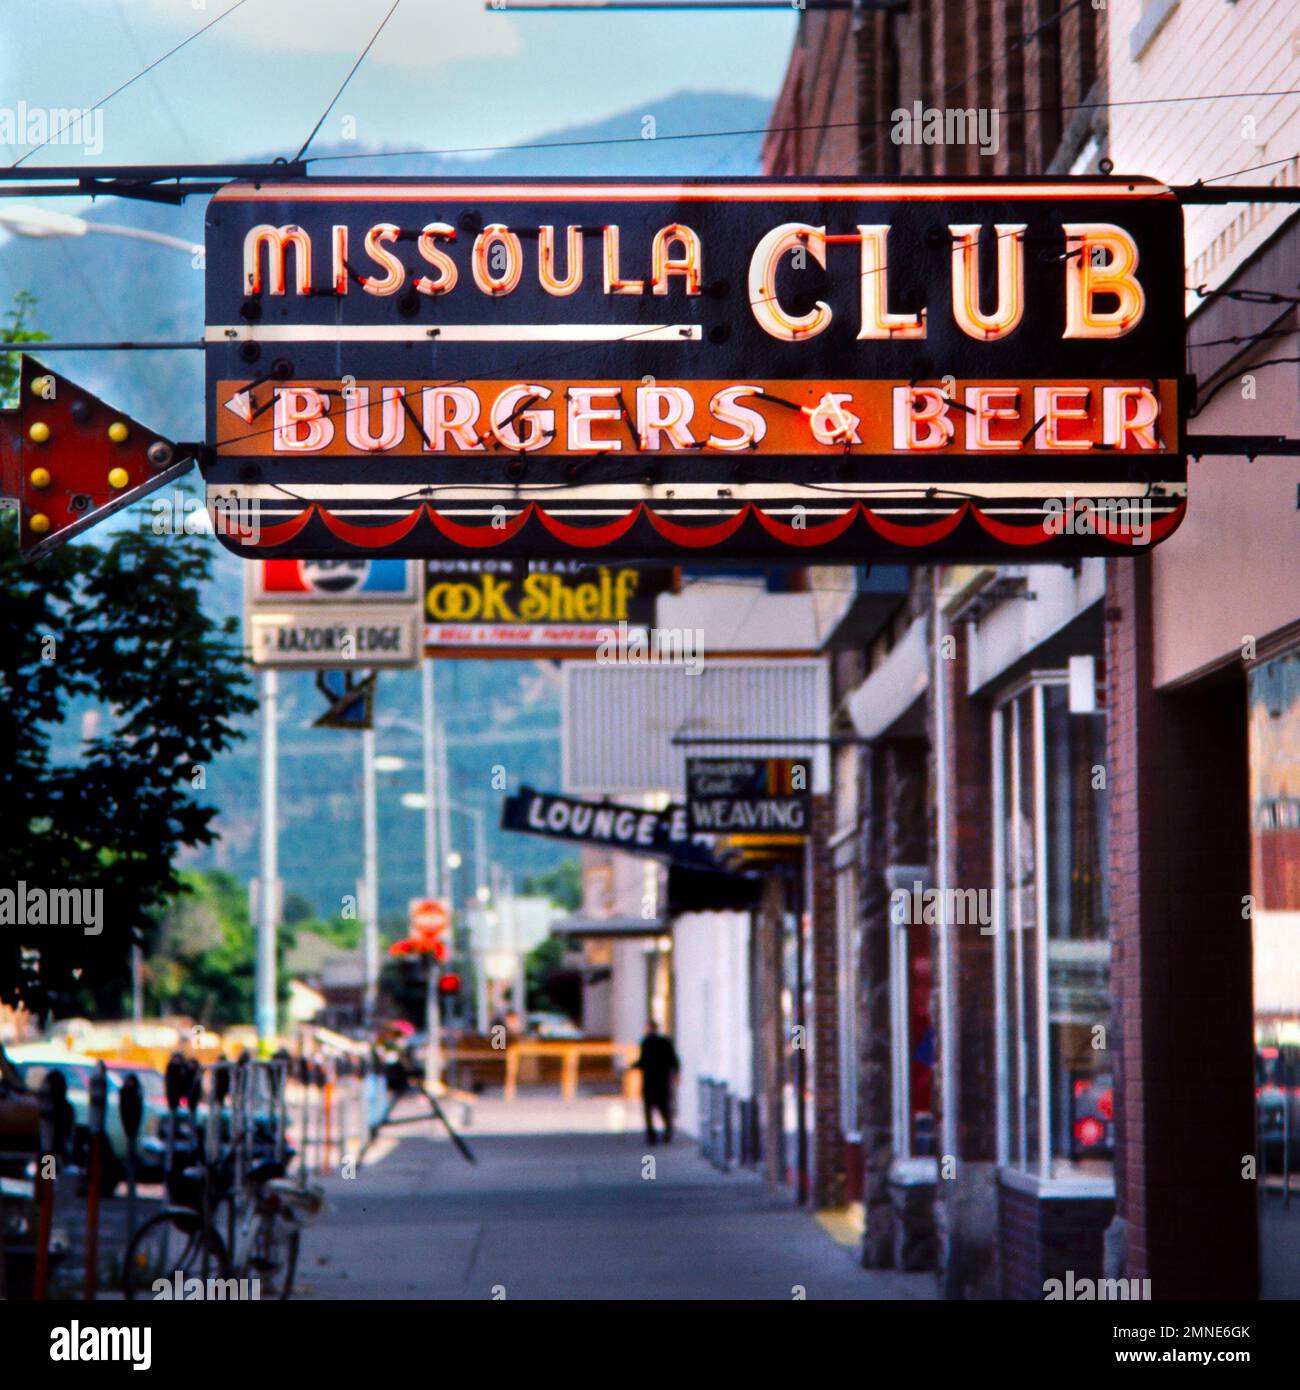 Insegna al neon che pubblicizza hamburger e birra al bar sportivo Missoula Club nel centro di Missoula, Montana. Lo storico Missoula Club è noto per il suo hambu Foto Stock